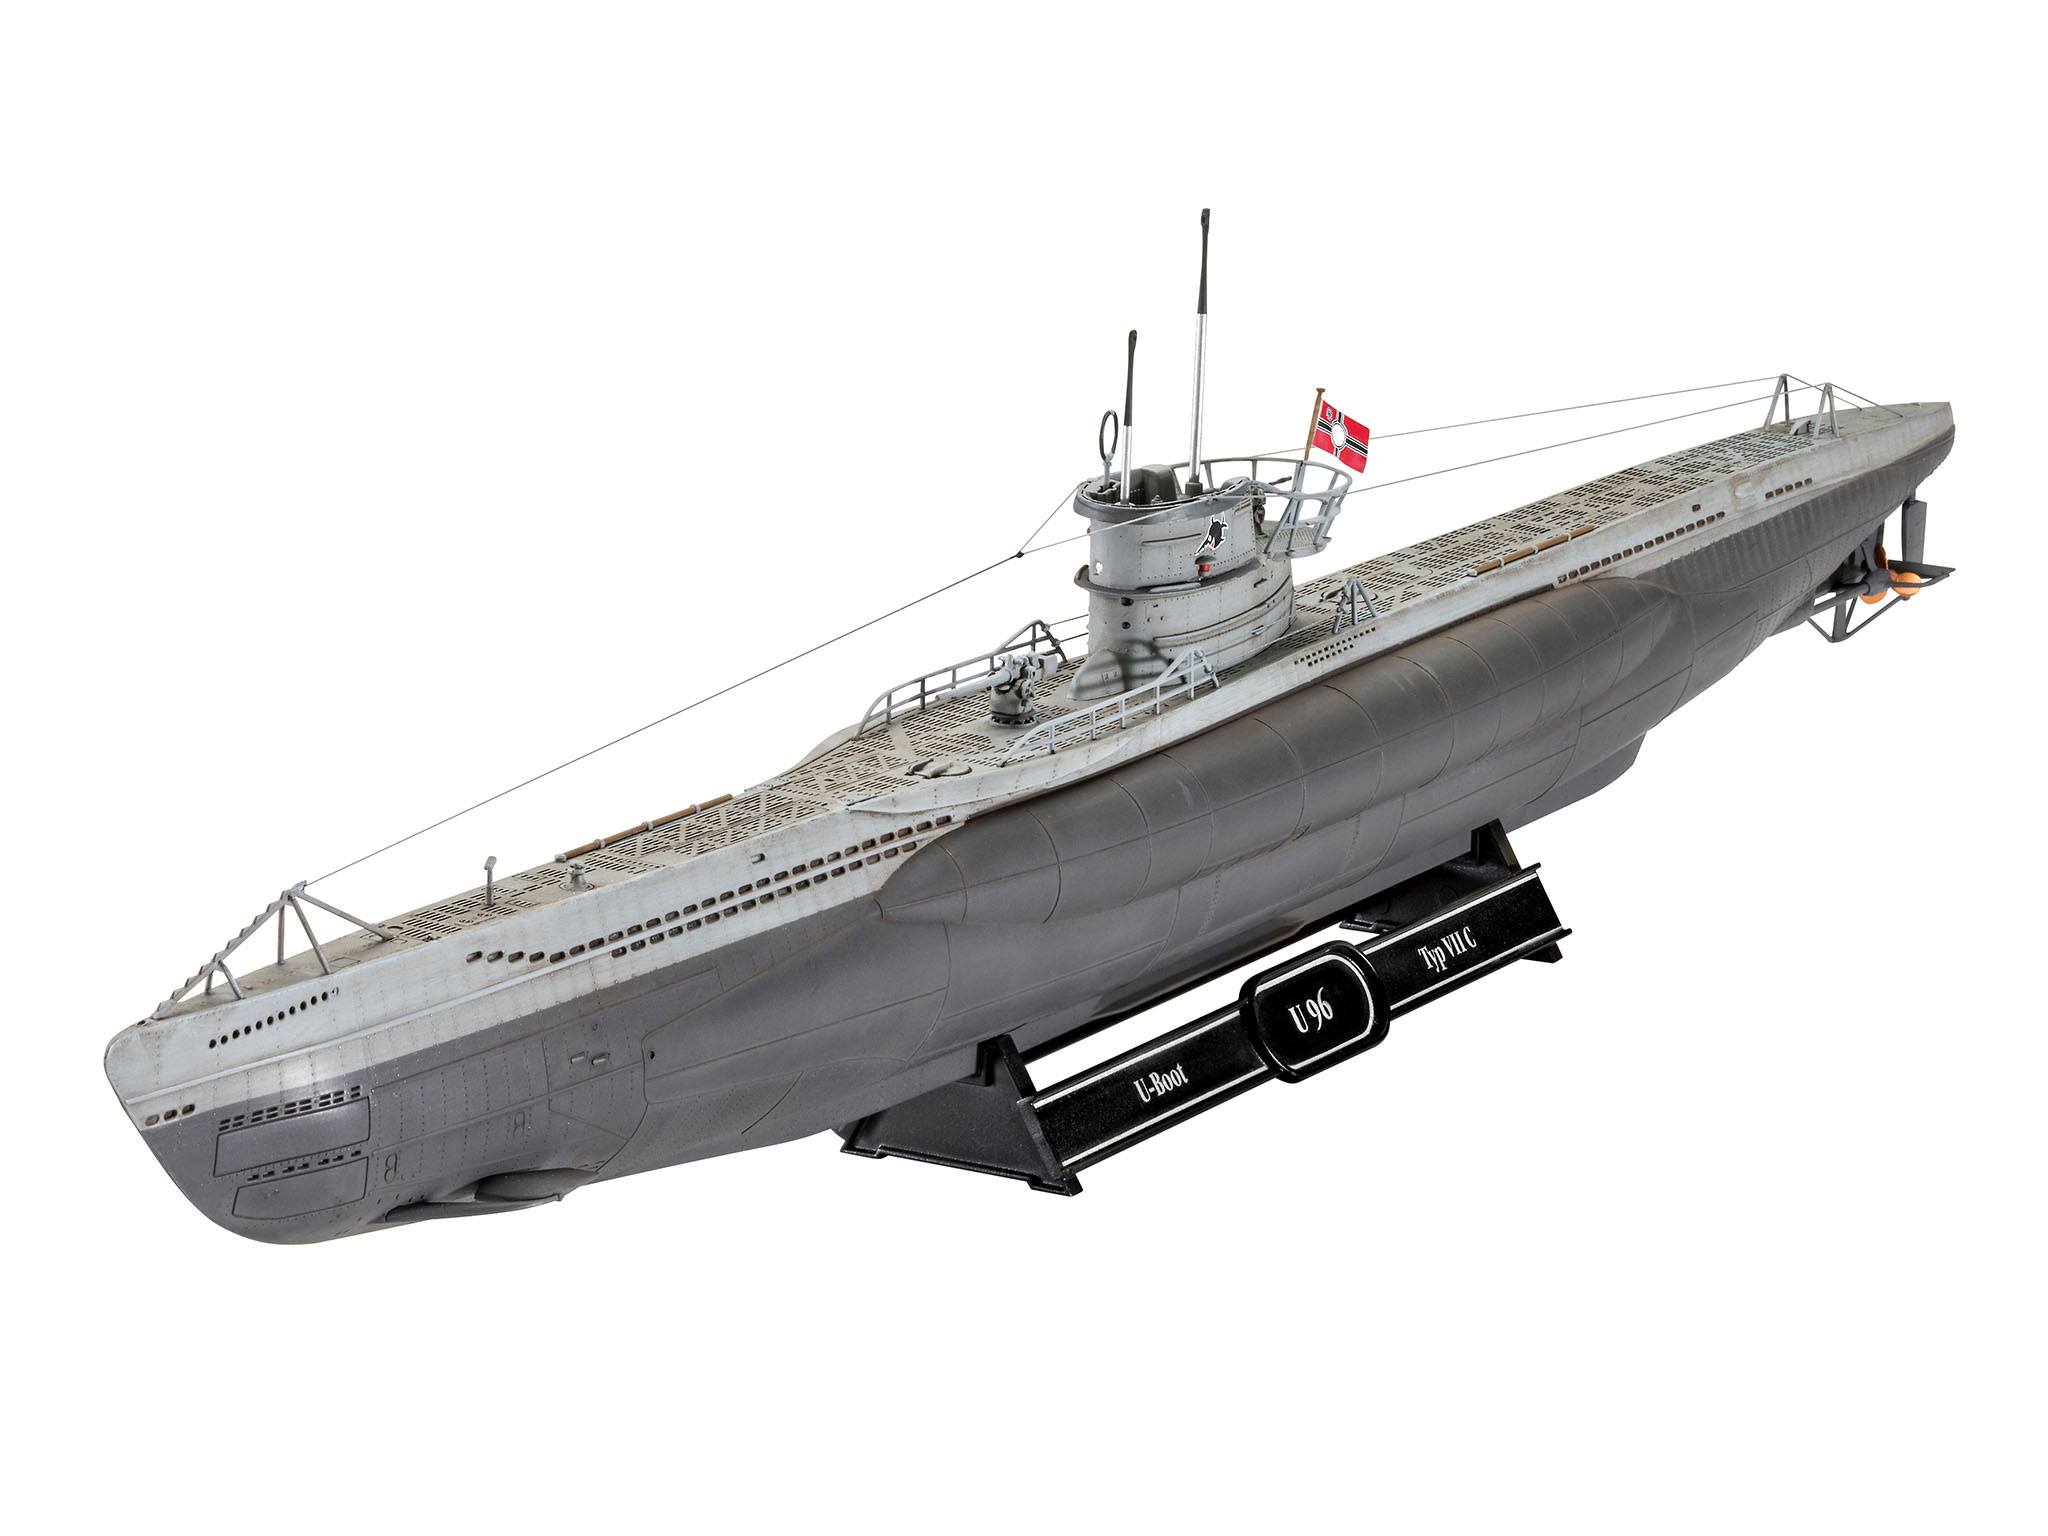 Das Boot Modellbausatz Geschenk-Set 1/144 U-Boot U96 Typ VII C 40th Anniversary 46 cm